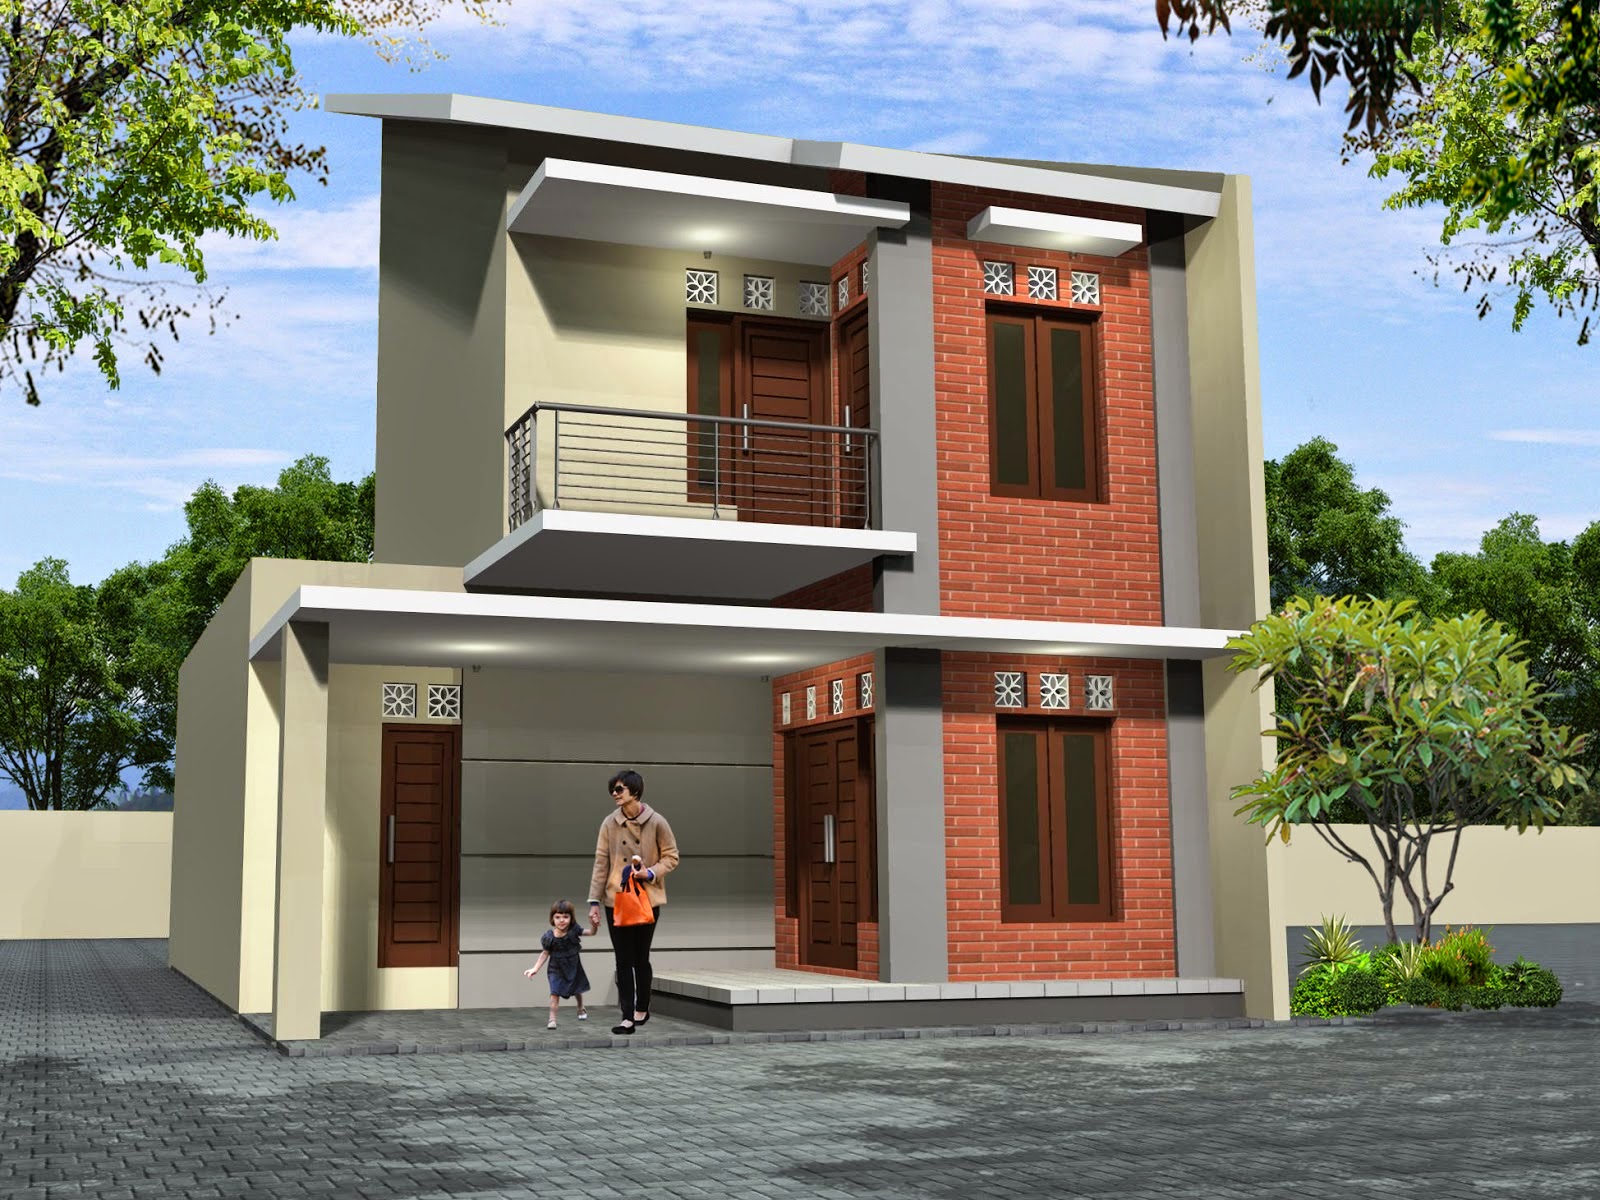 Jual Rumah Tangerang Model Rumah Minimalis 2 Lantai